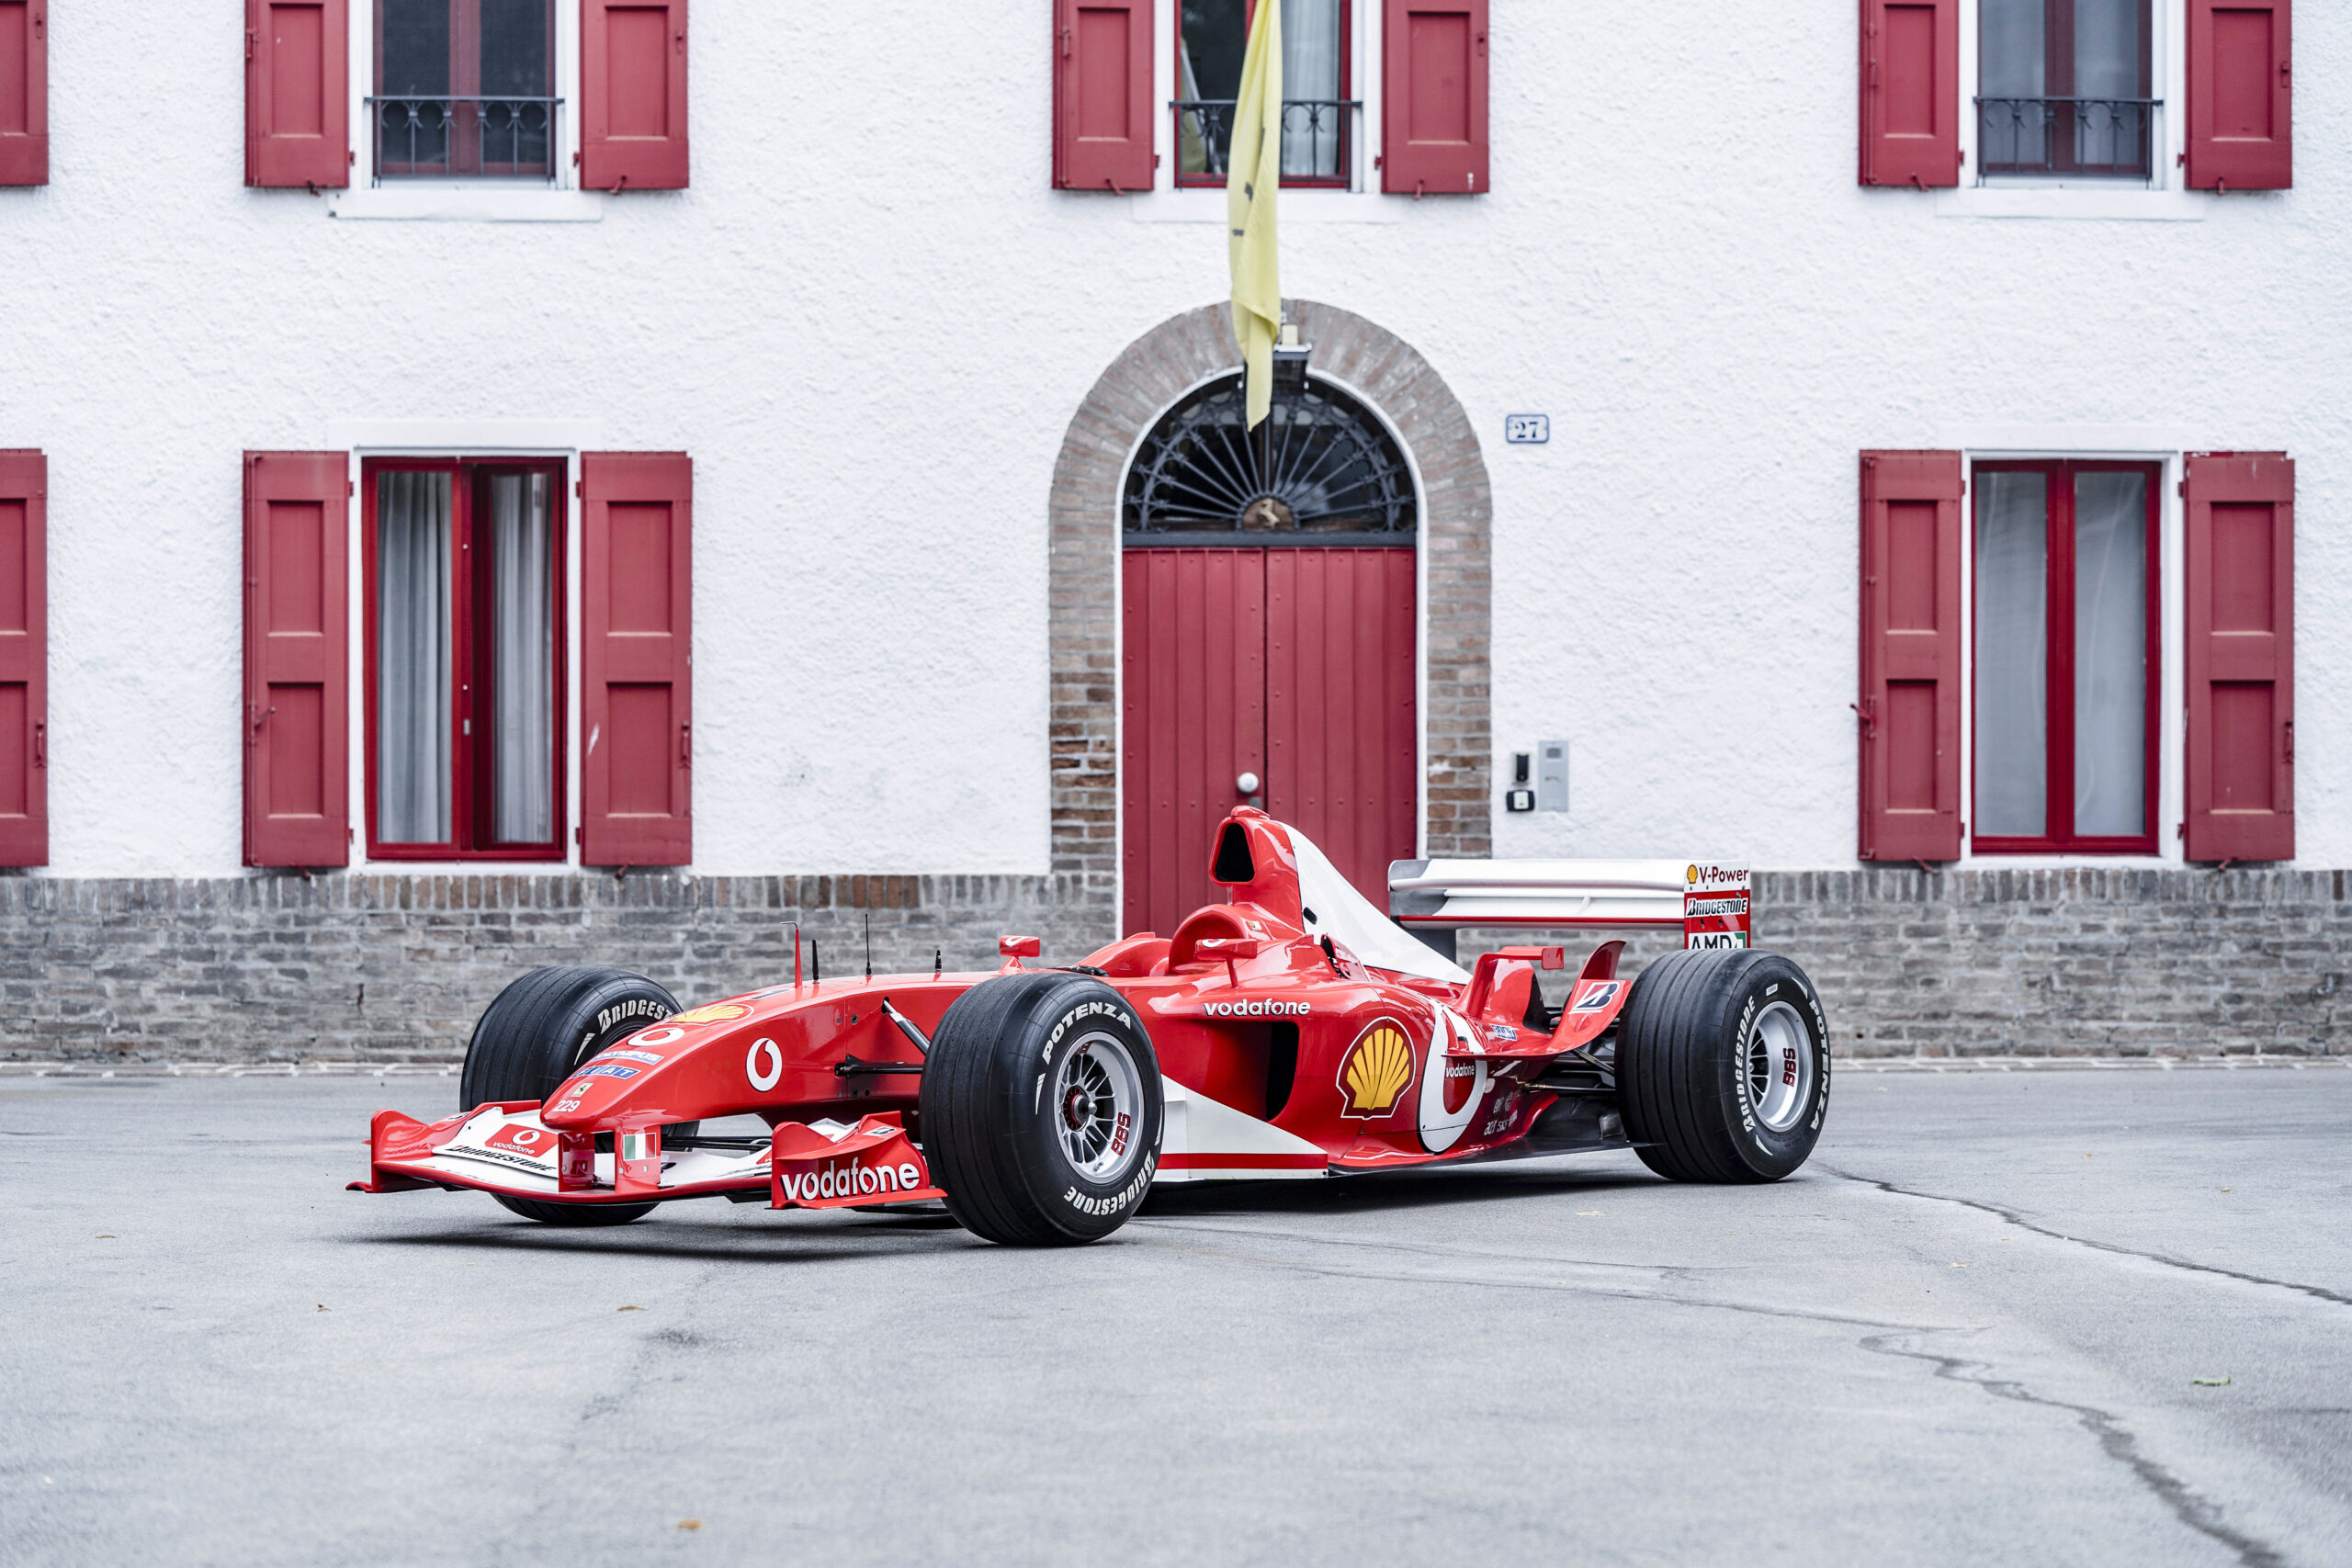 Ferrari F2003-GA, Fiorano